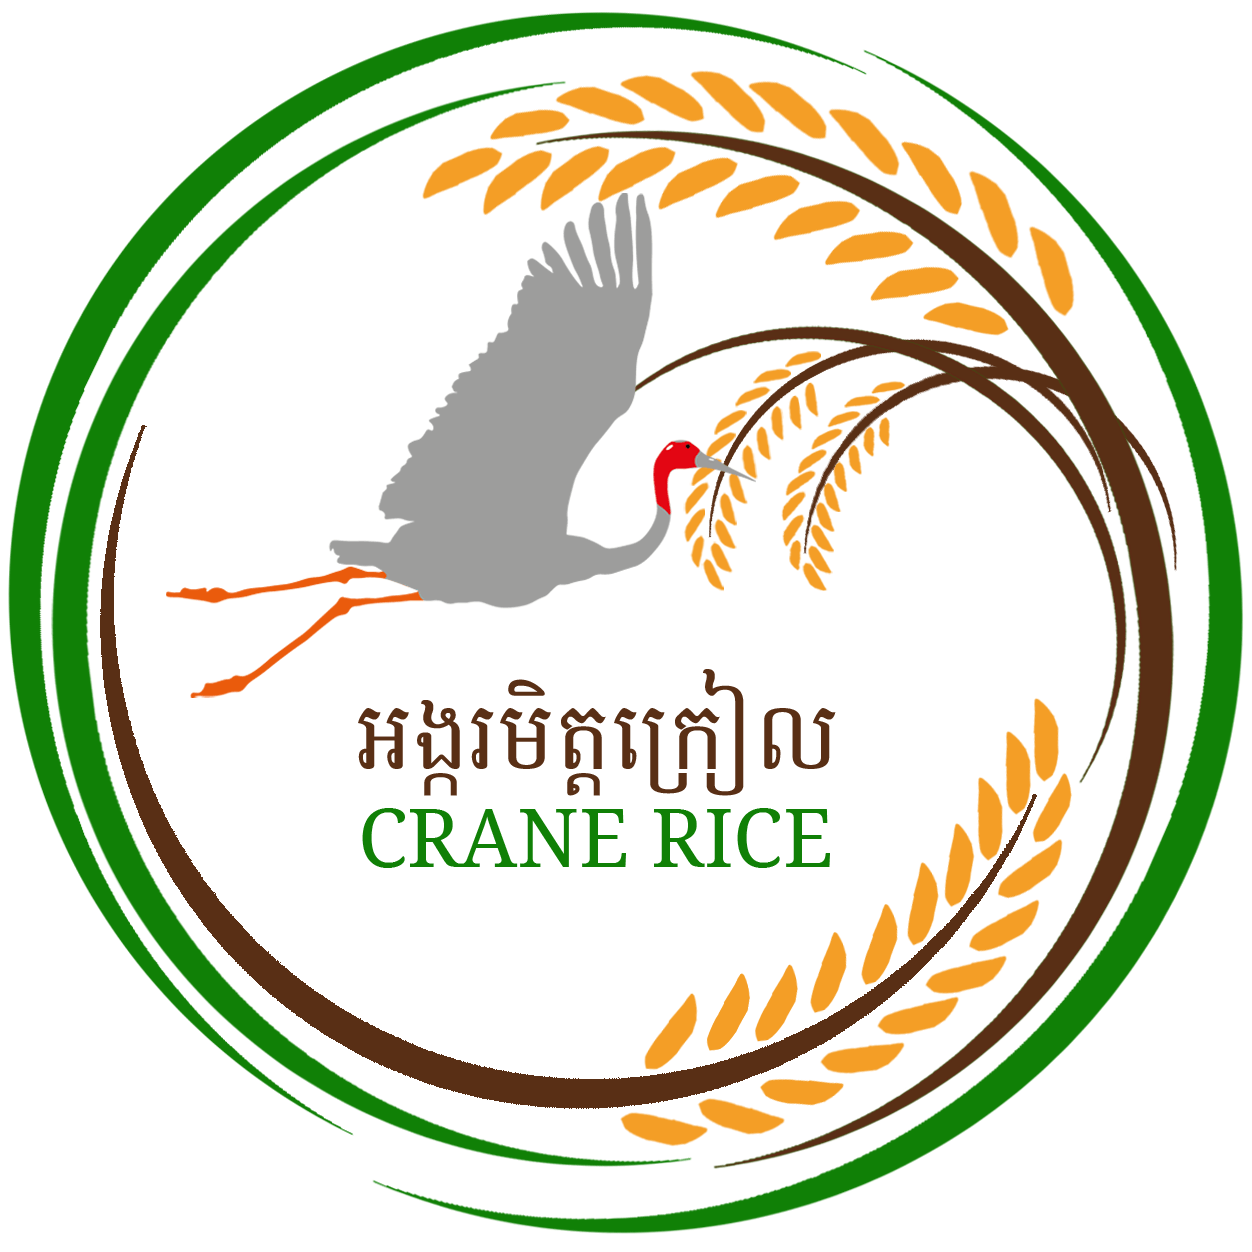 Crane Rice